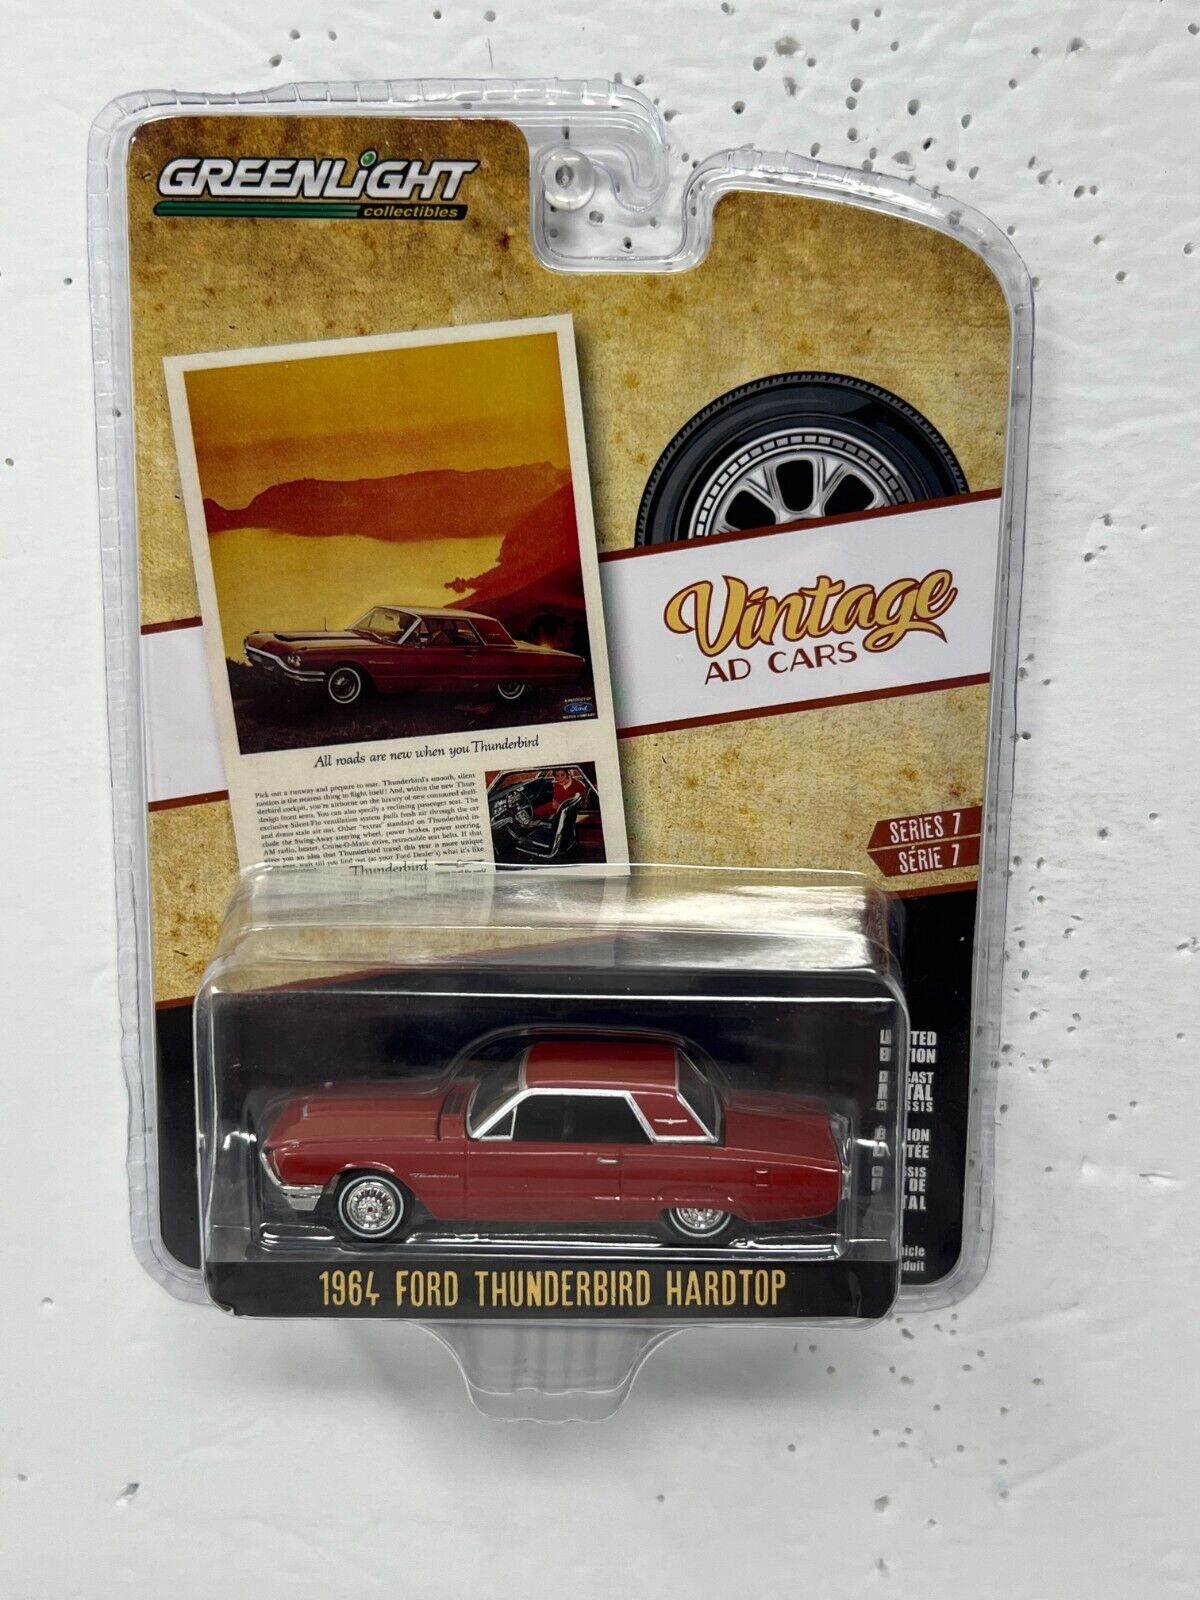 Greenlight Vintage Ad Cars 1964 Ford Thunderbird Hardtop 1:64 Diecast